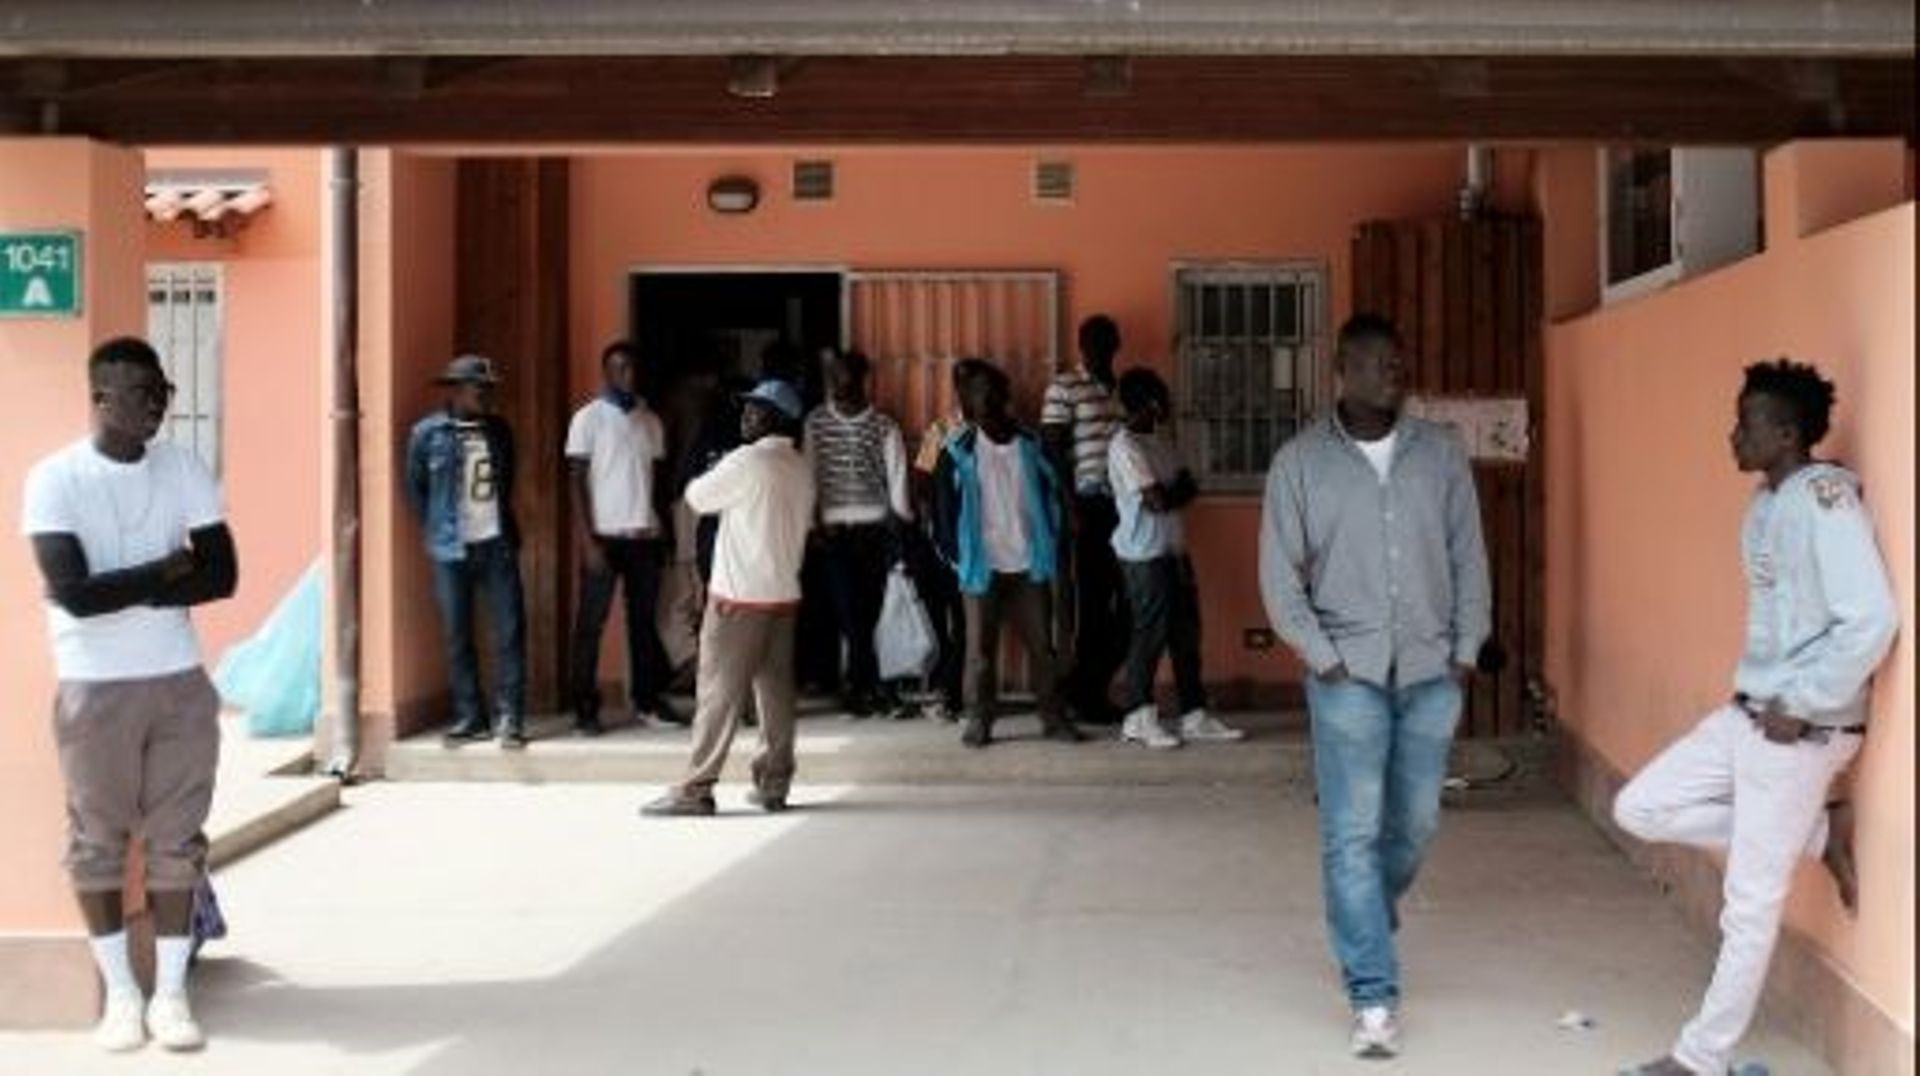 Des migrants attendent devant un centre d'accueil pour les demandeurs d'asile à Mineo, en Sicile, le 21 avril 2015